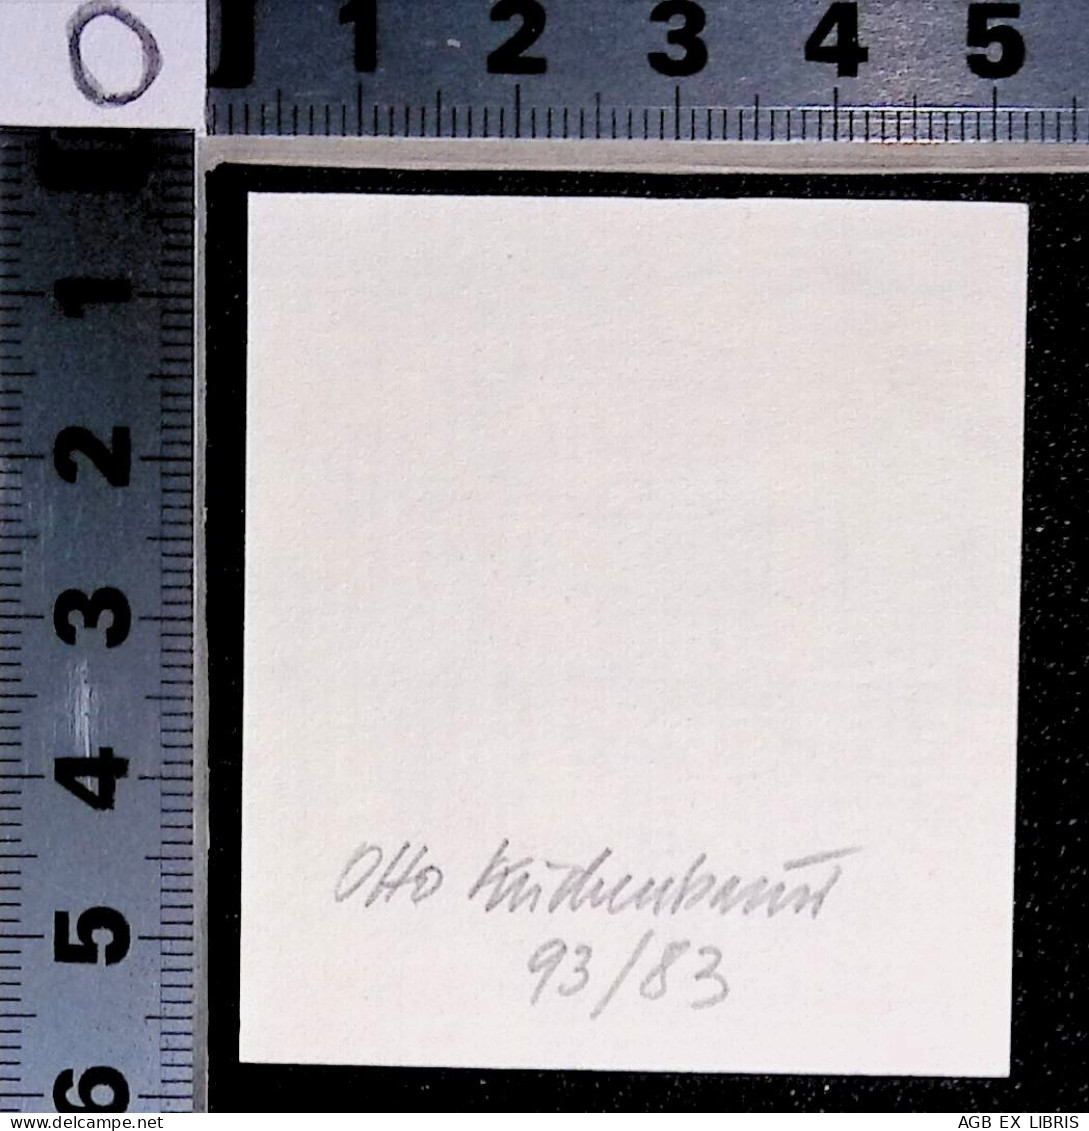 EX LIBRIS OTTO KUCHENBAUER Per JOHANN HABERMANN 93/83 L27bis-F01 DONAUWORTHER BEITUNG EX MUSICIS - Exlibris